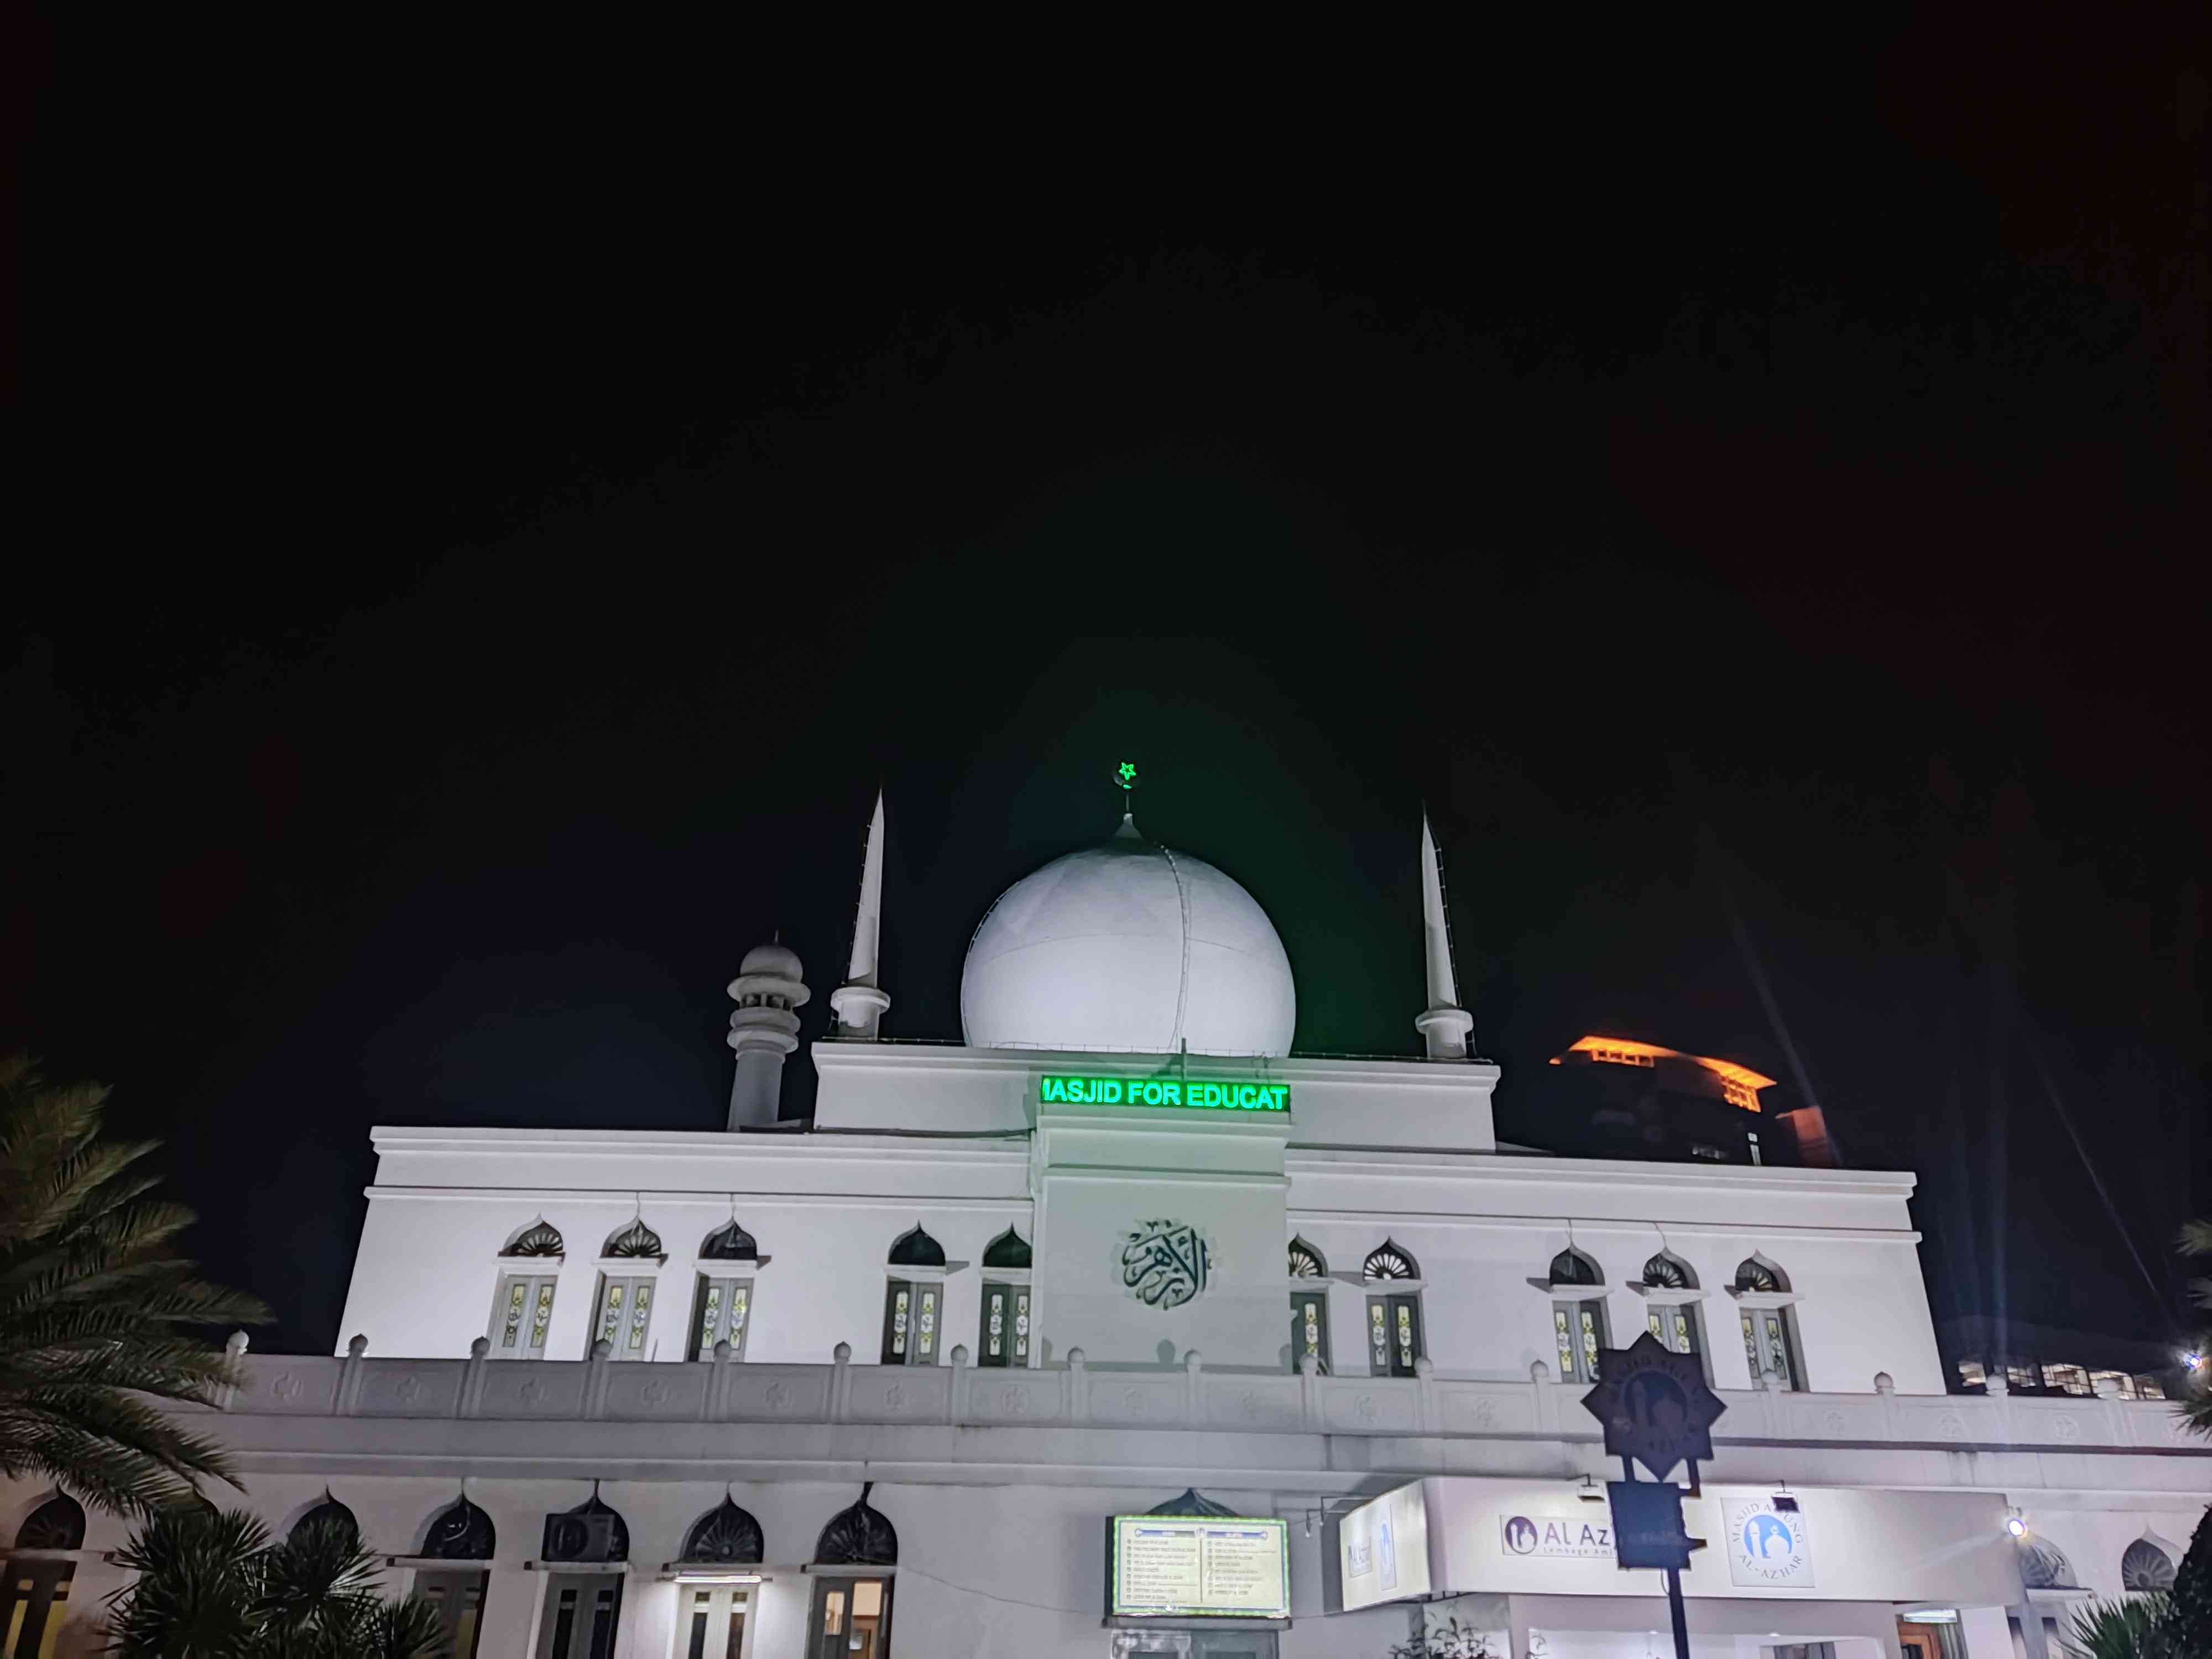 Suasana Mesjid di bulan suci Ramadan/ Lokasi Mesjid Agung Al Azhar, Jakarta Selatan (dokumentasi pribadi)